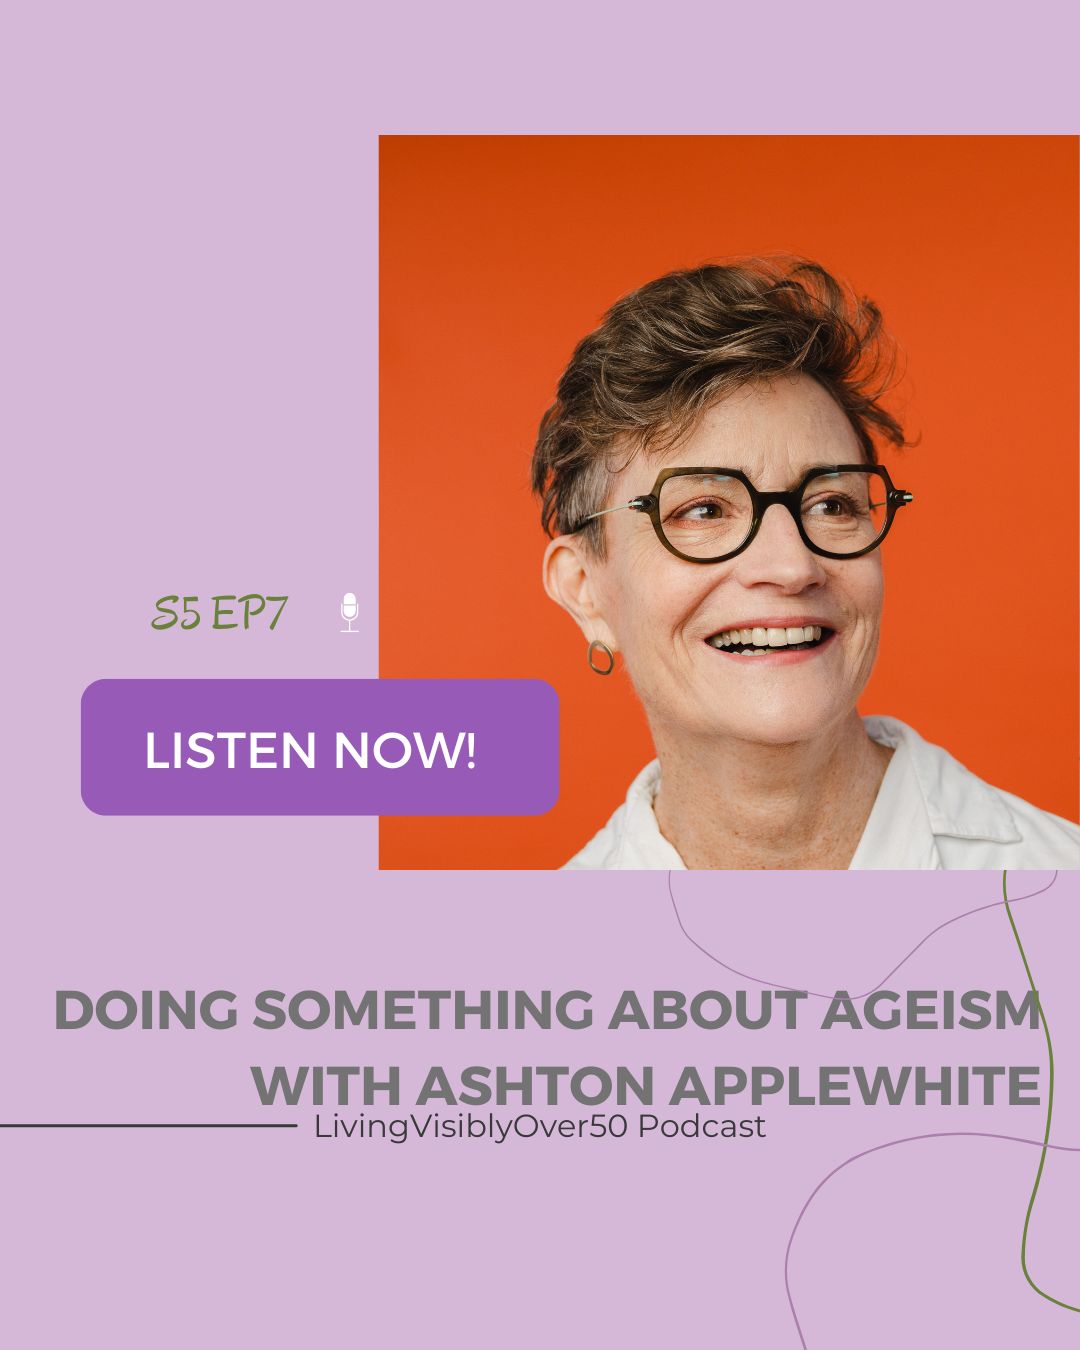 living visibly over 50 podcast - ashton applewhite